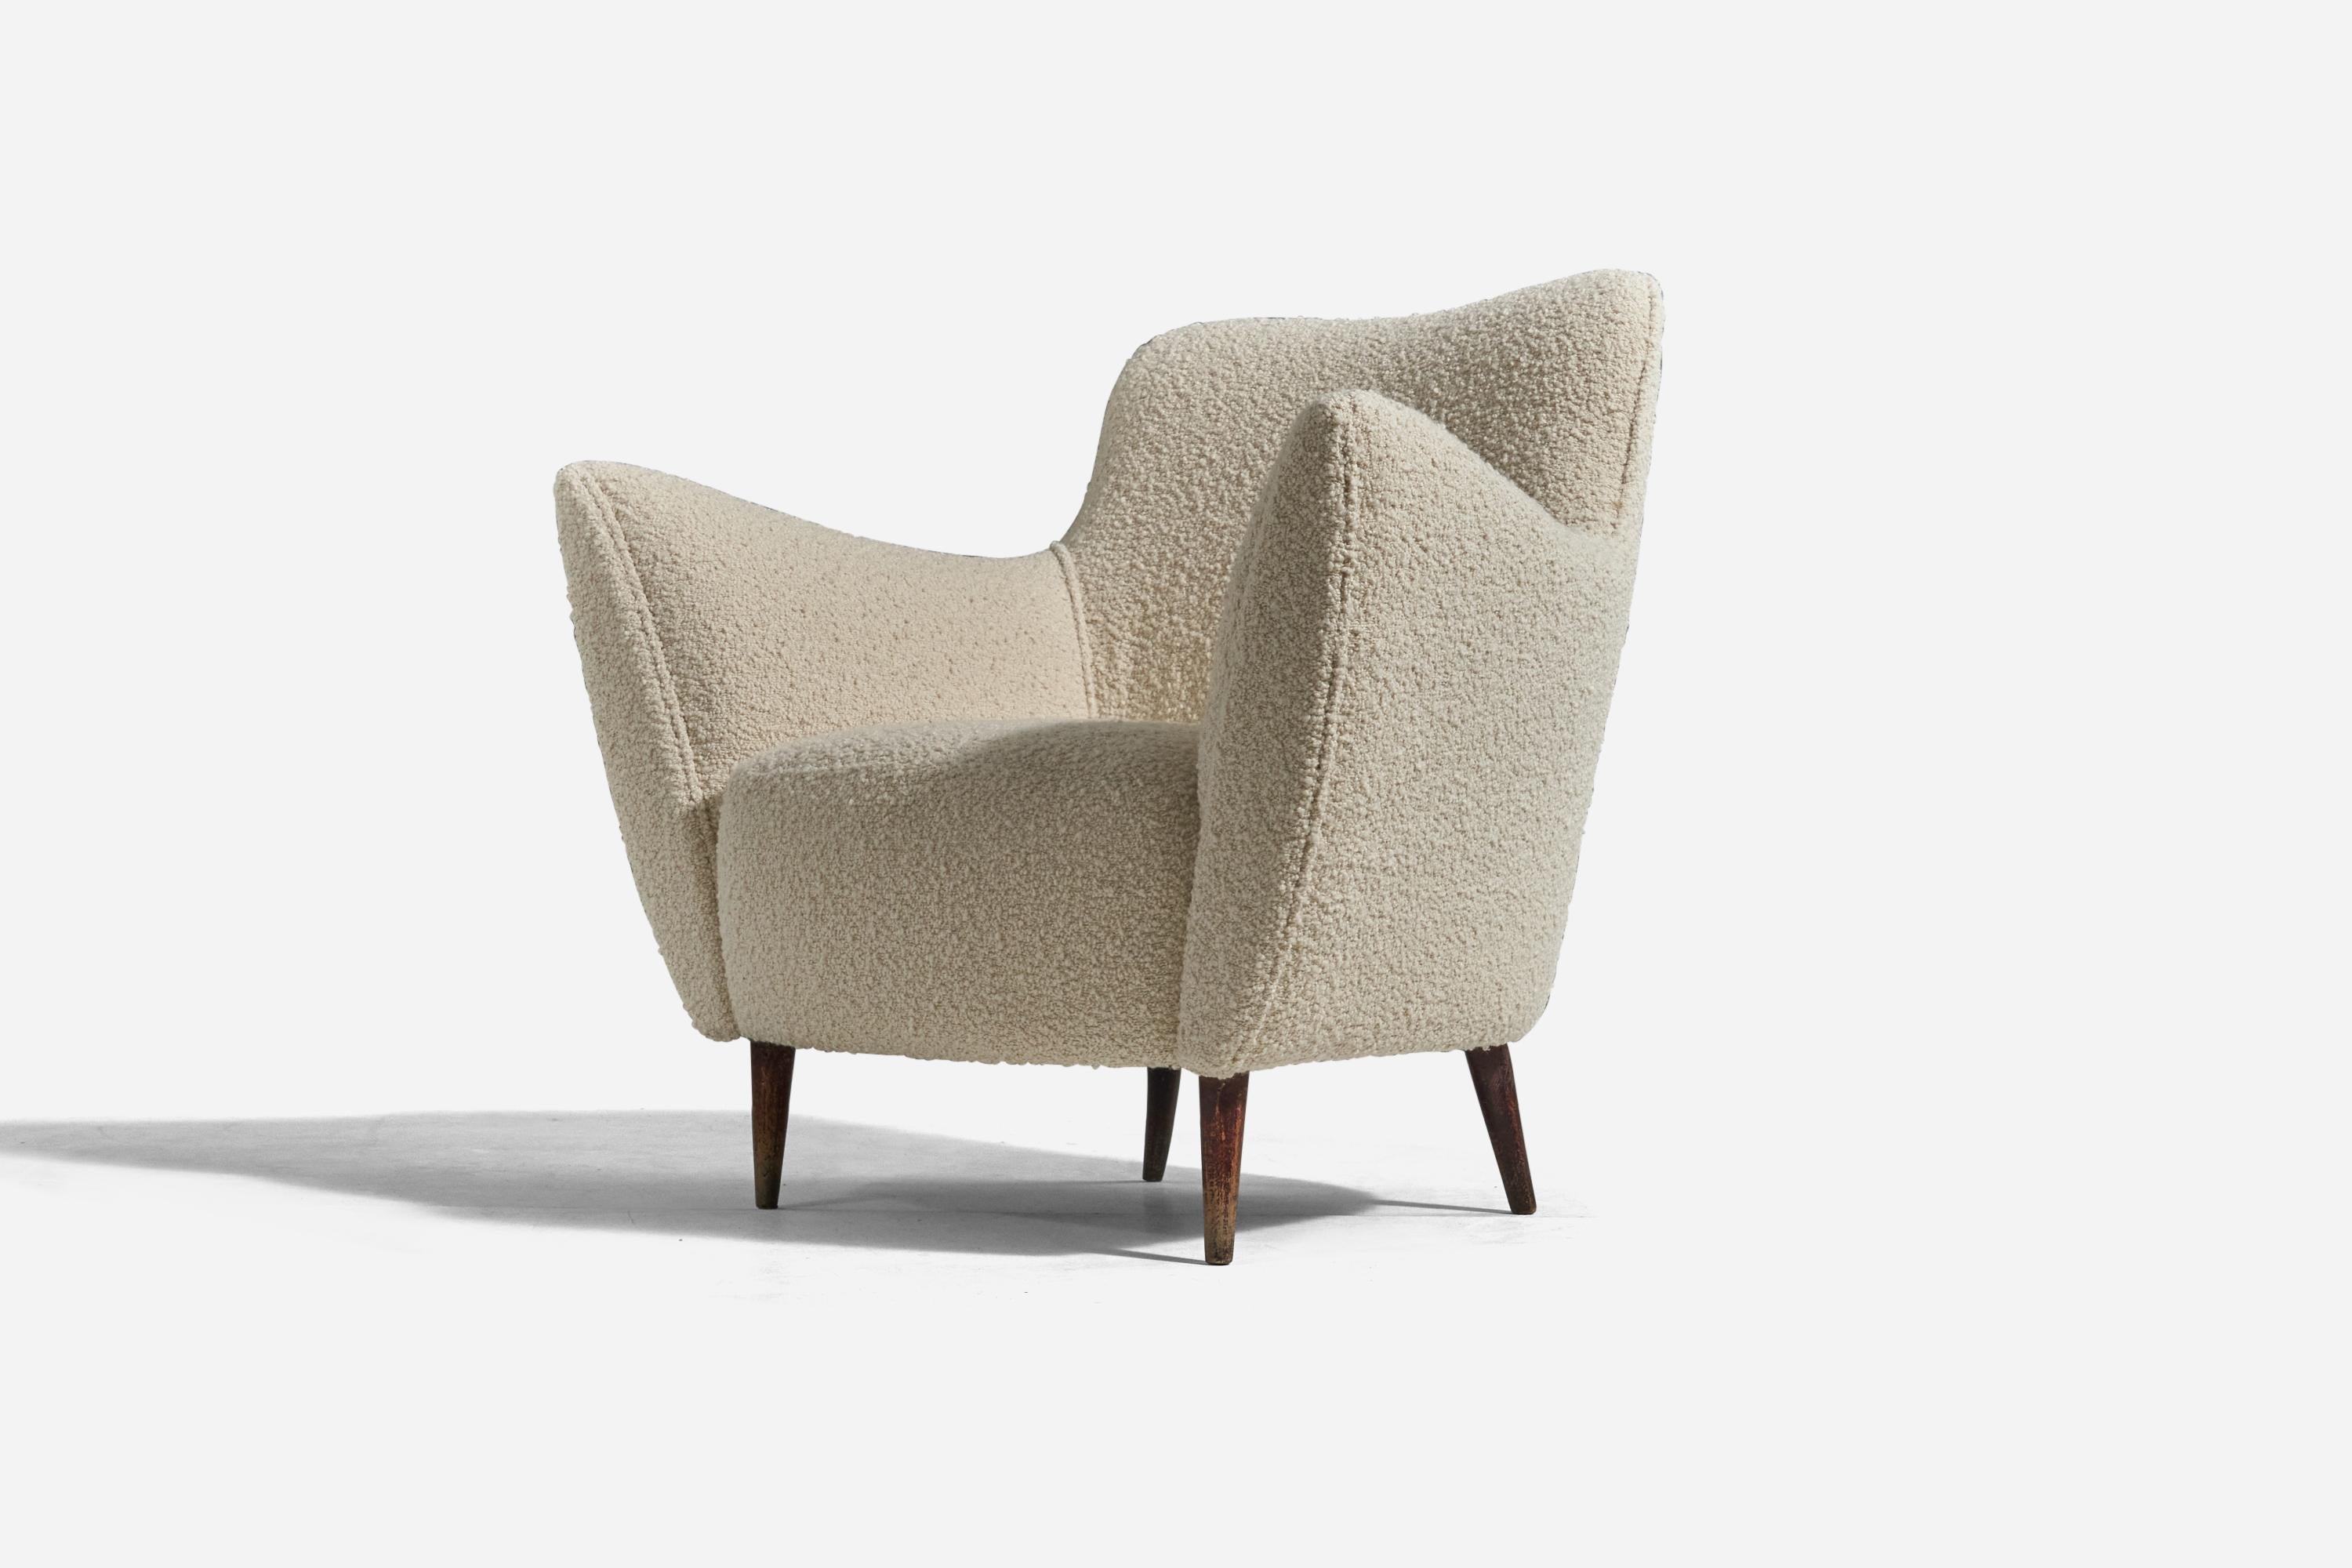 Italian Guglielmo Veronesi, Lounge Chairs, Wood, White Fabric, ISA Bergamo, Italy, 1950s